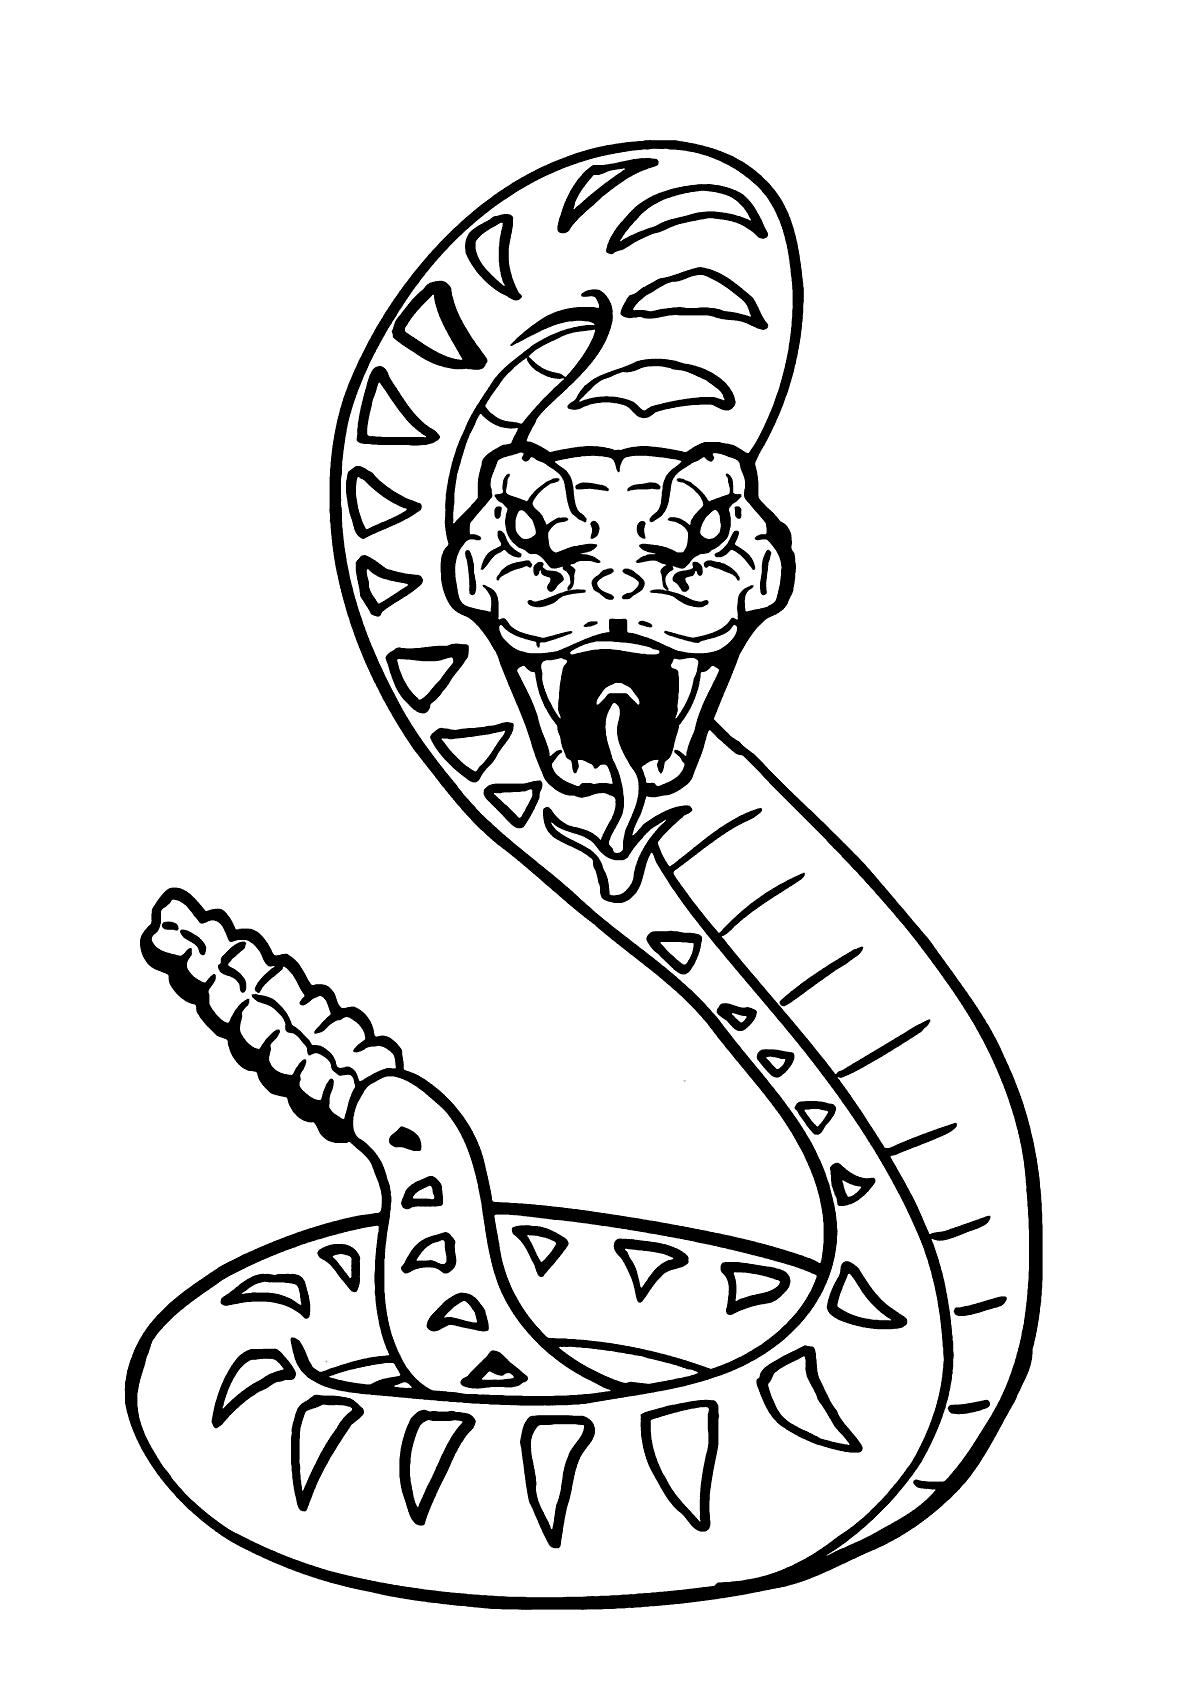 Cobra com bolinhas para colorir - Imprimir Desenhos